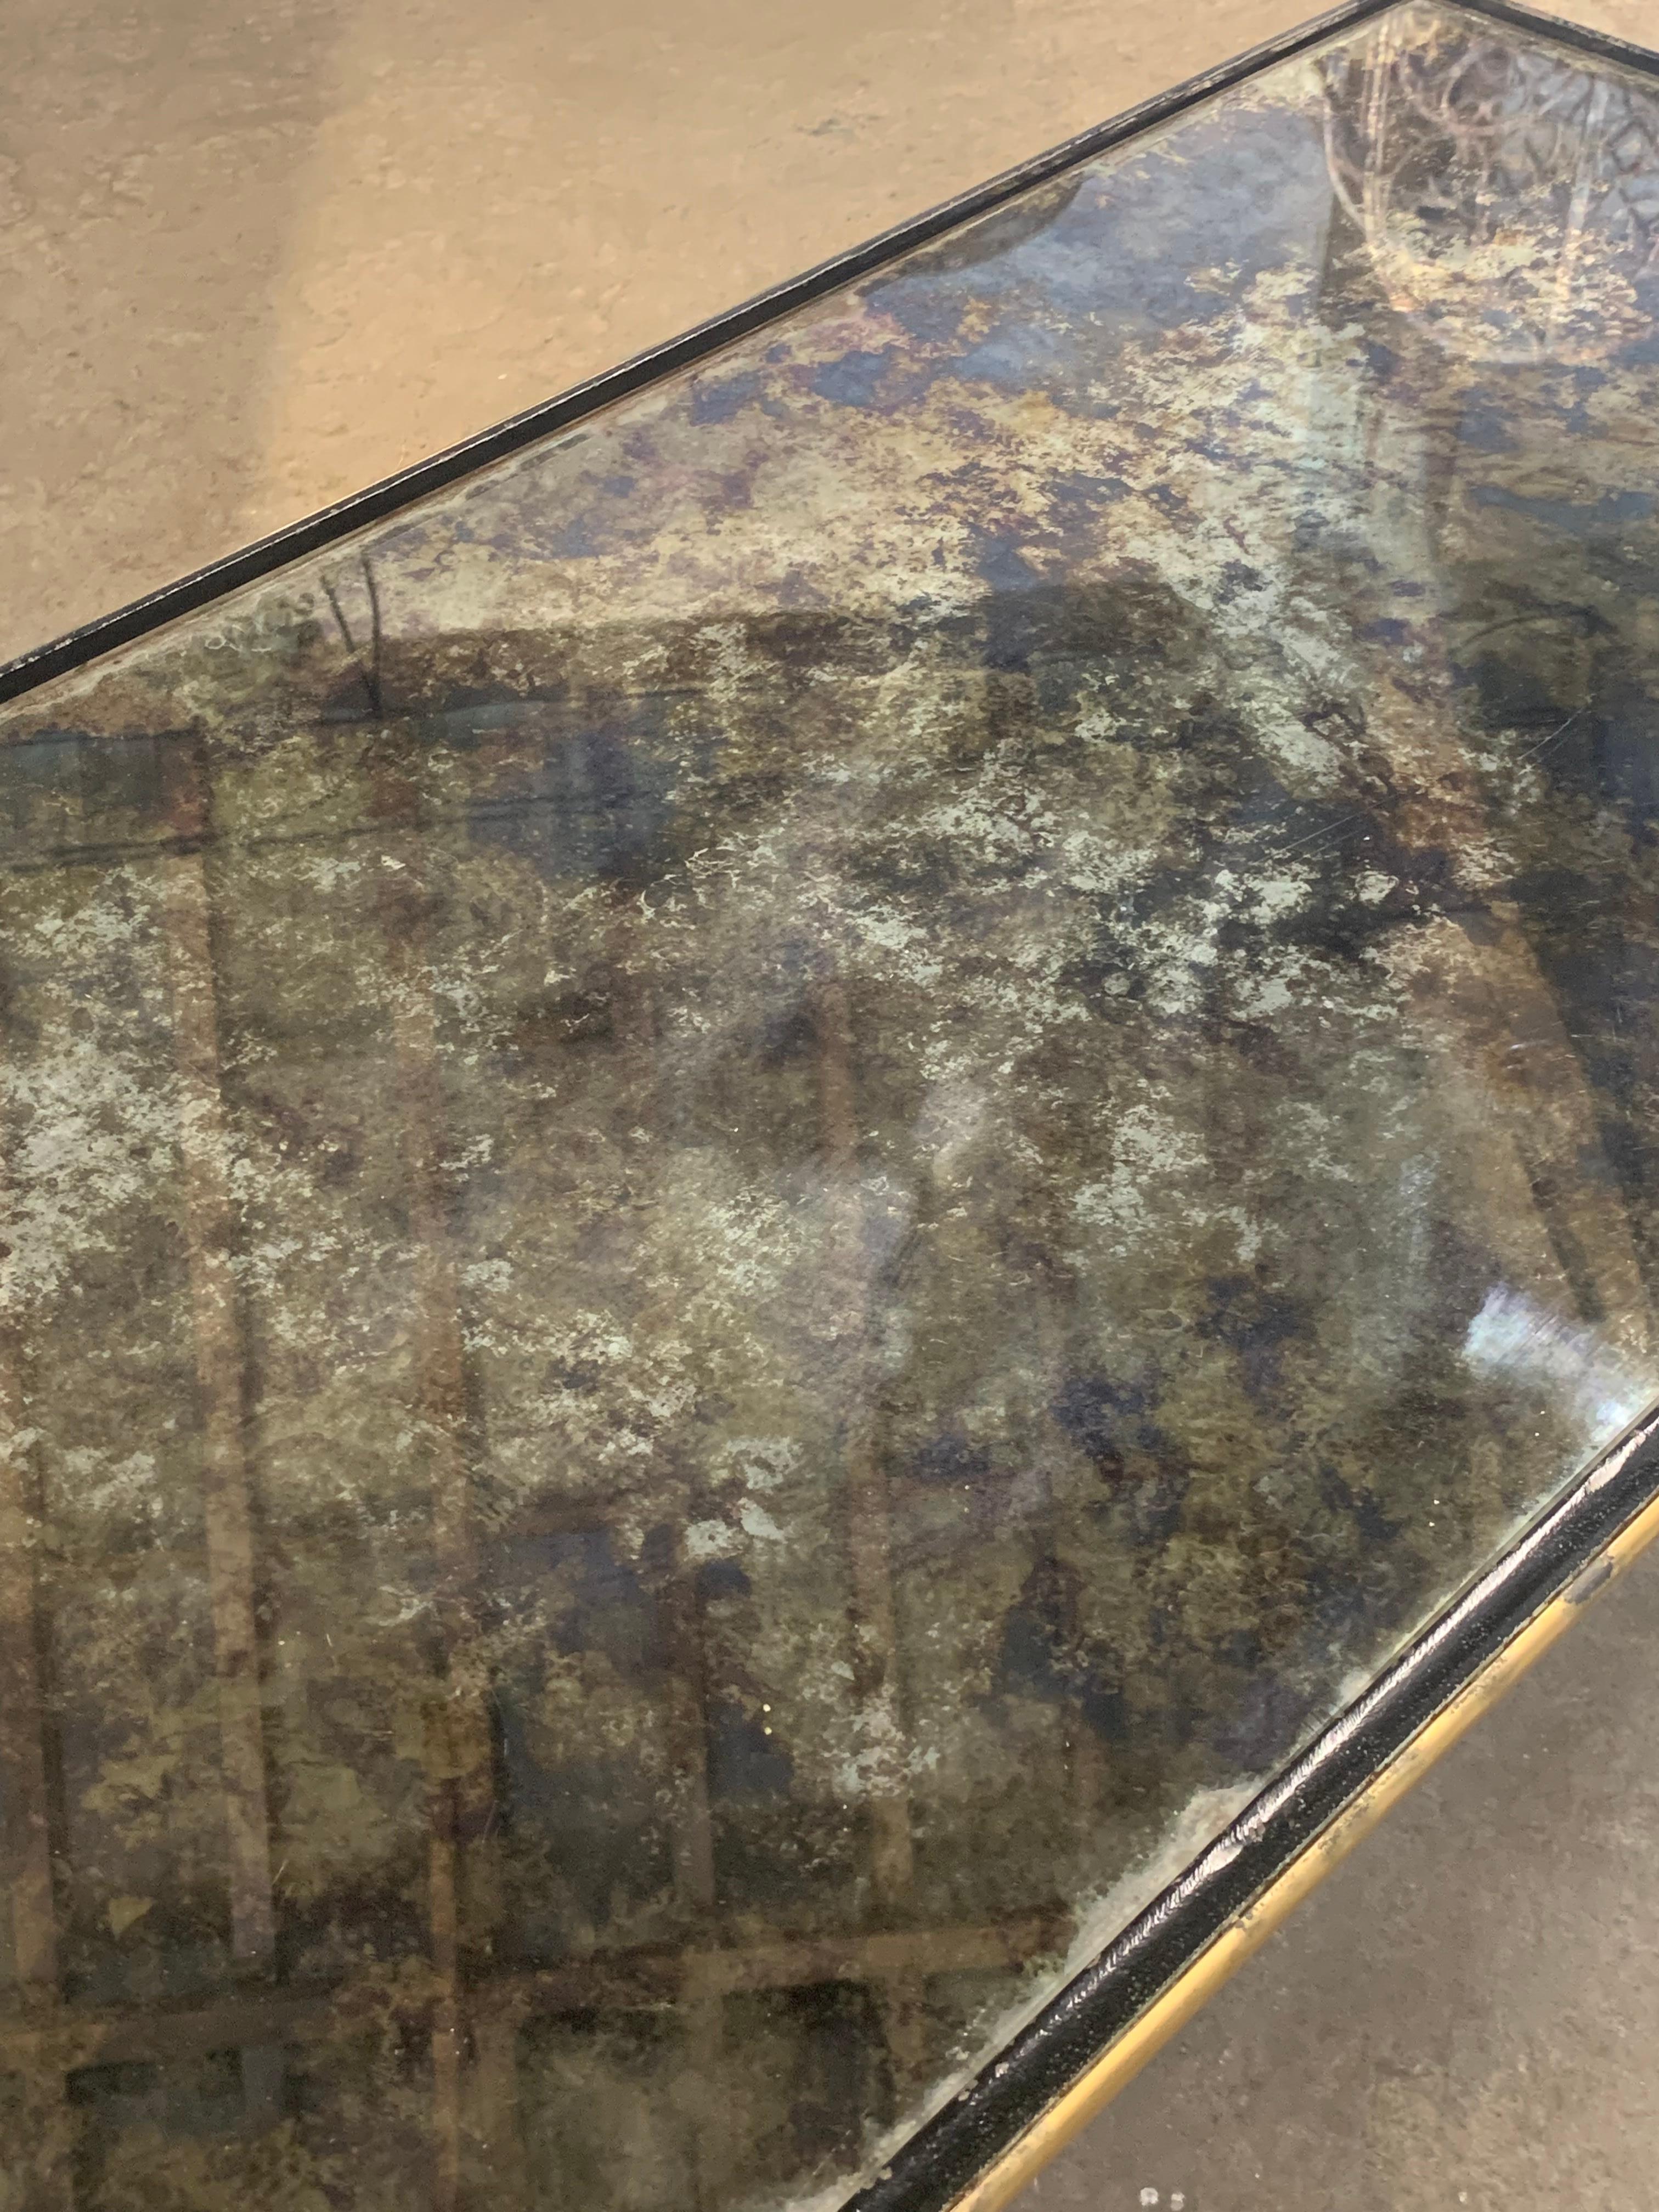 Magnifique table basse en fer forgé de René Drouet, avec son plateau en verre miroir d'origine. La partie supérieure présente la plus belle oxydation, qui a pris de nombreuses années pour atteindre cet état. La base en fer forgé est en bel état